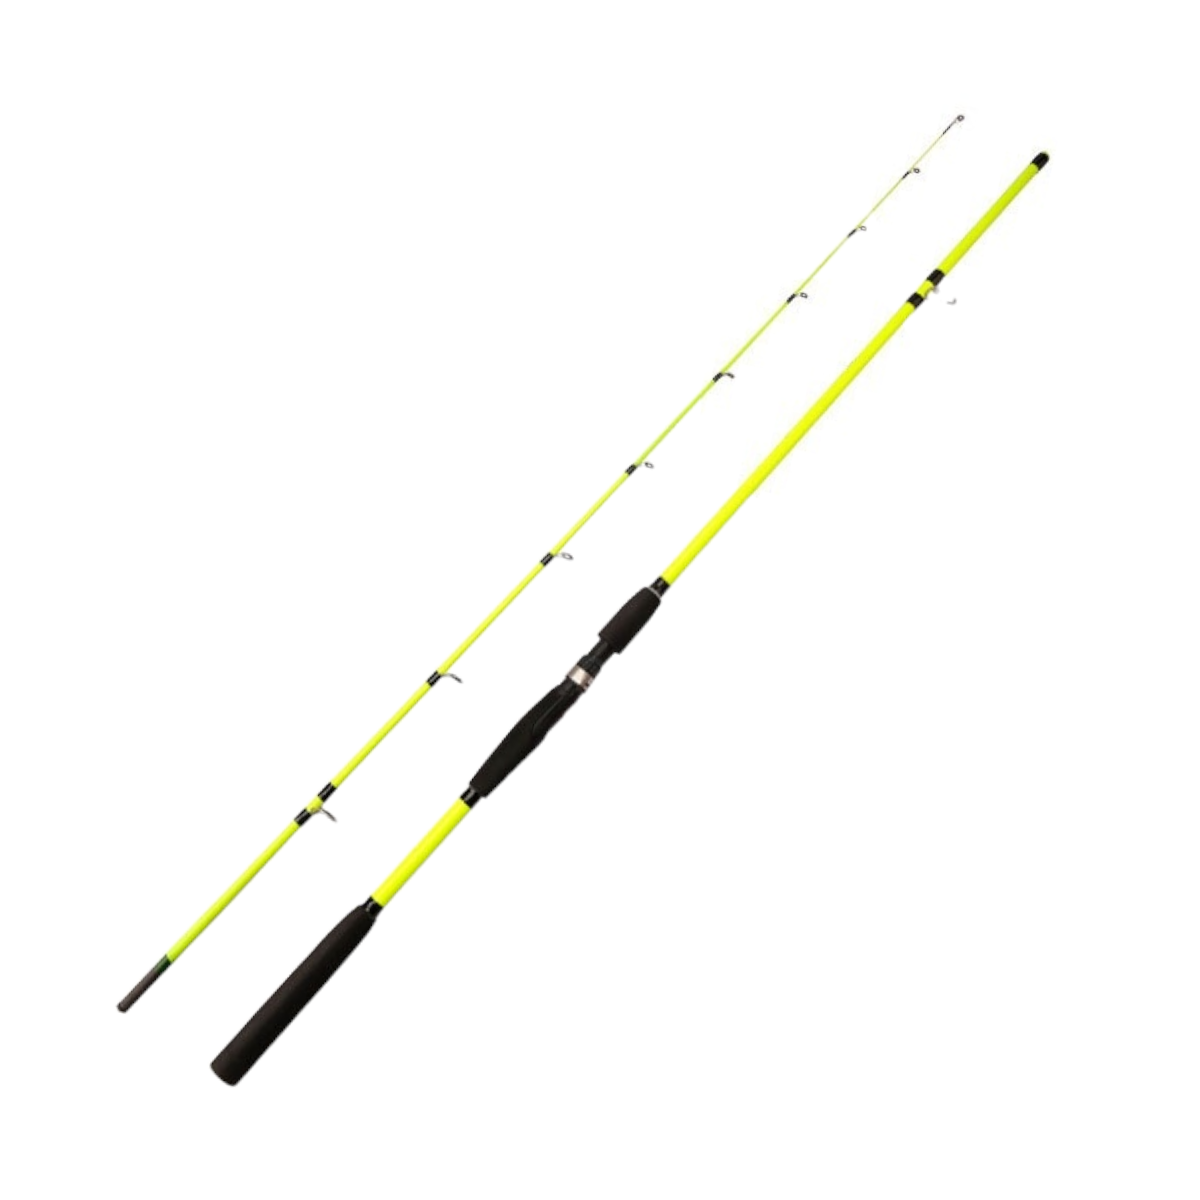 Caña pescar fibra carbono flexible amarilla 210 cm CÑS36